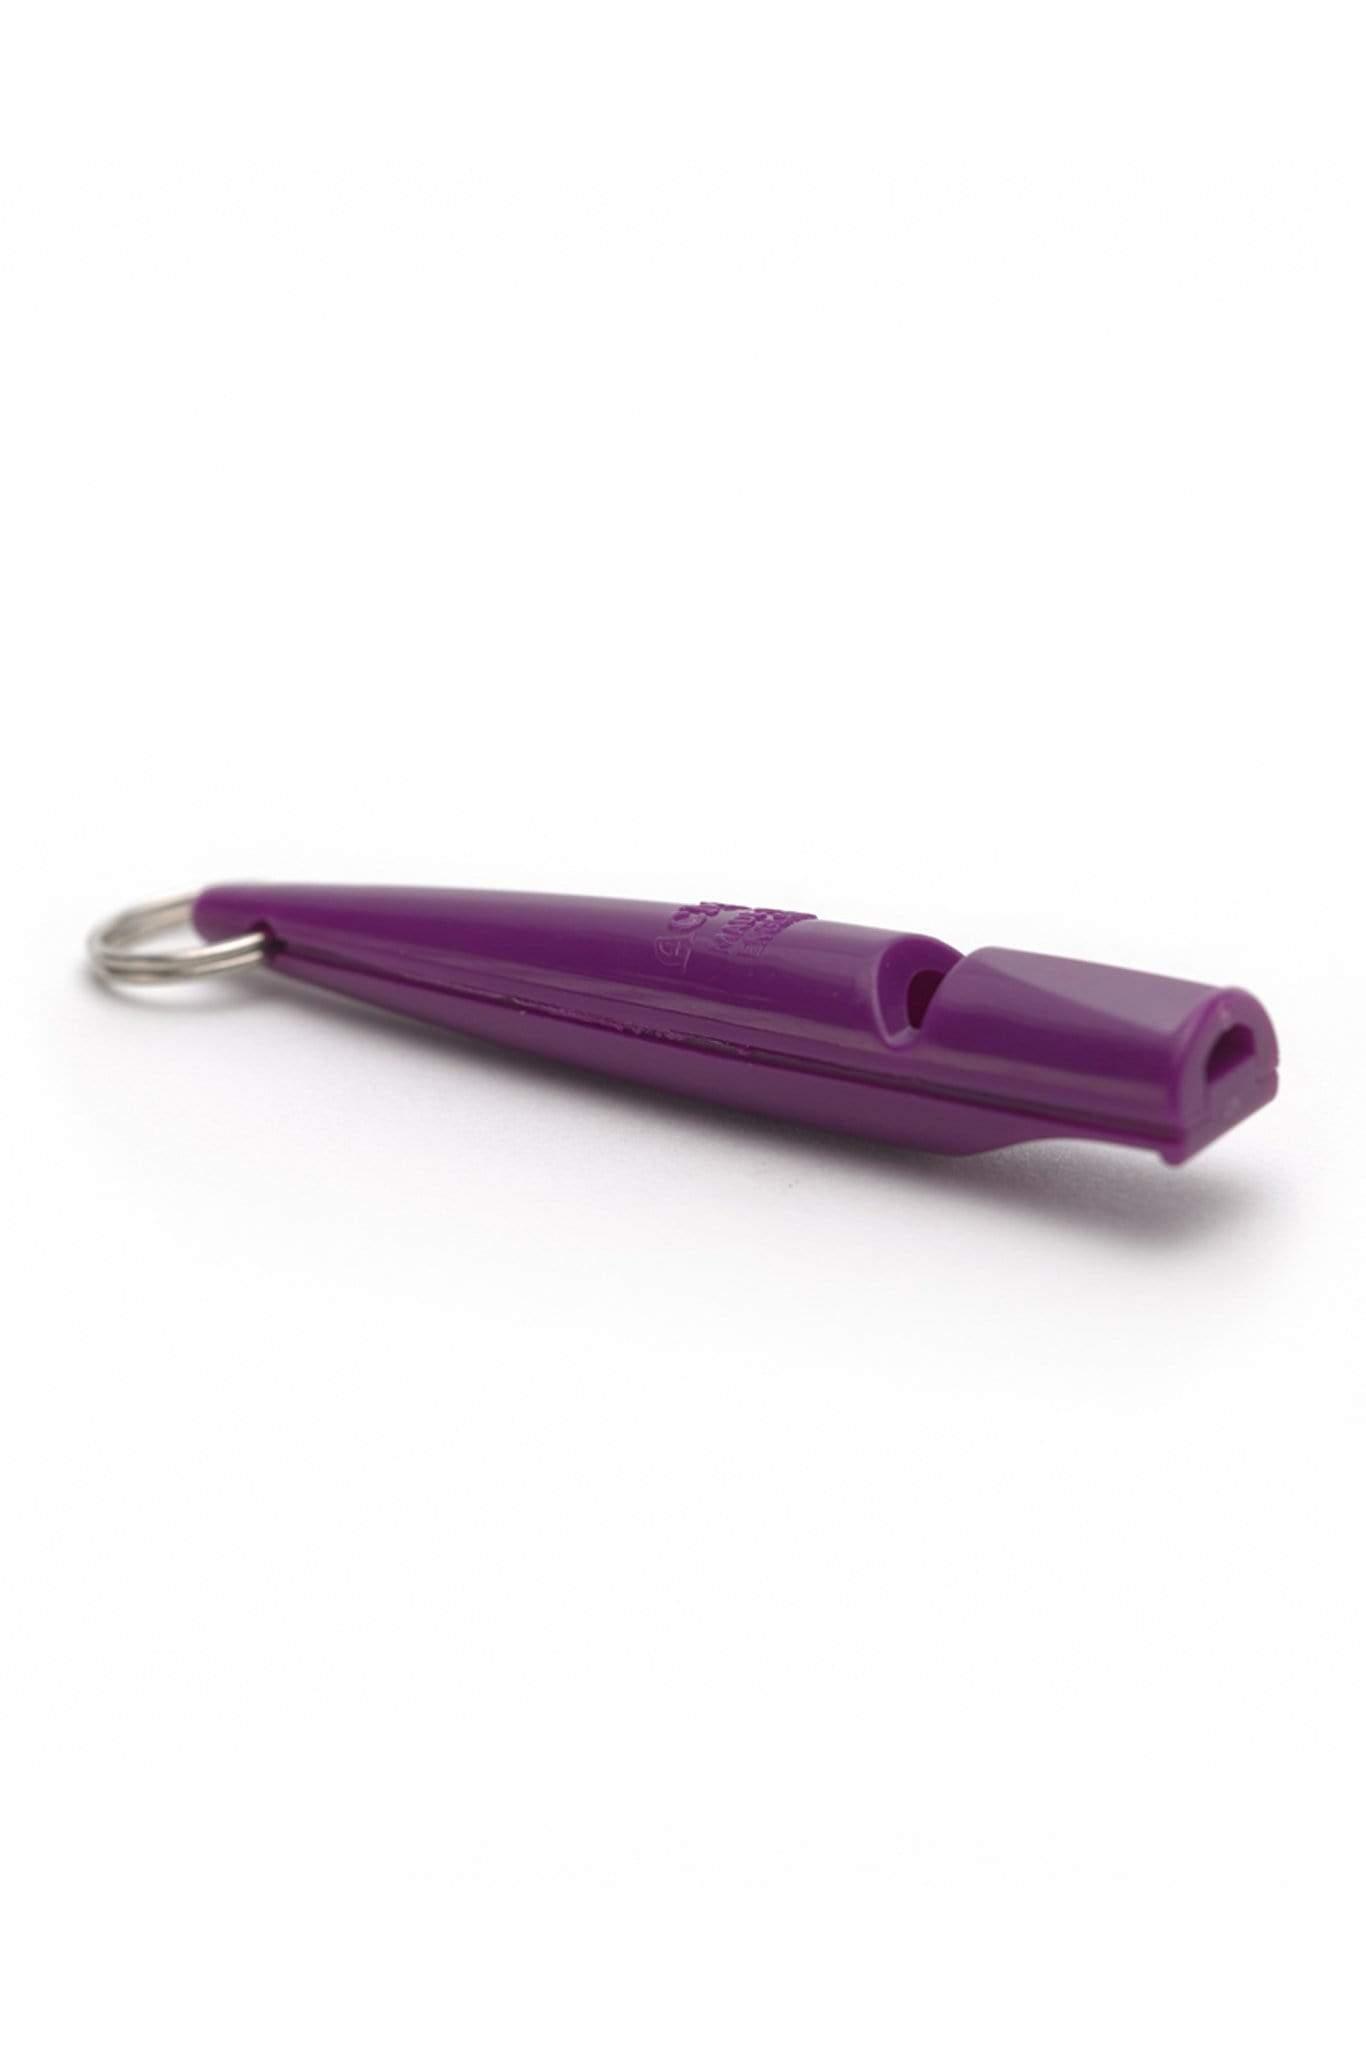 ACME Whistles & Lanyards Purple ACME Dog Training Whistle 211.5 - Purple